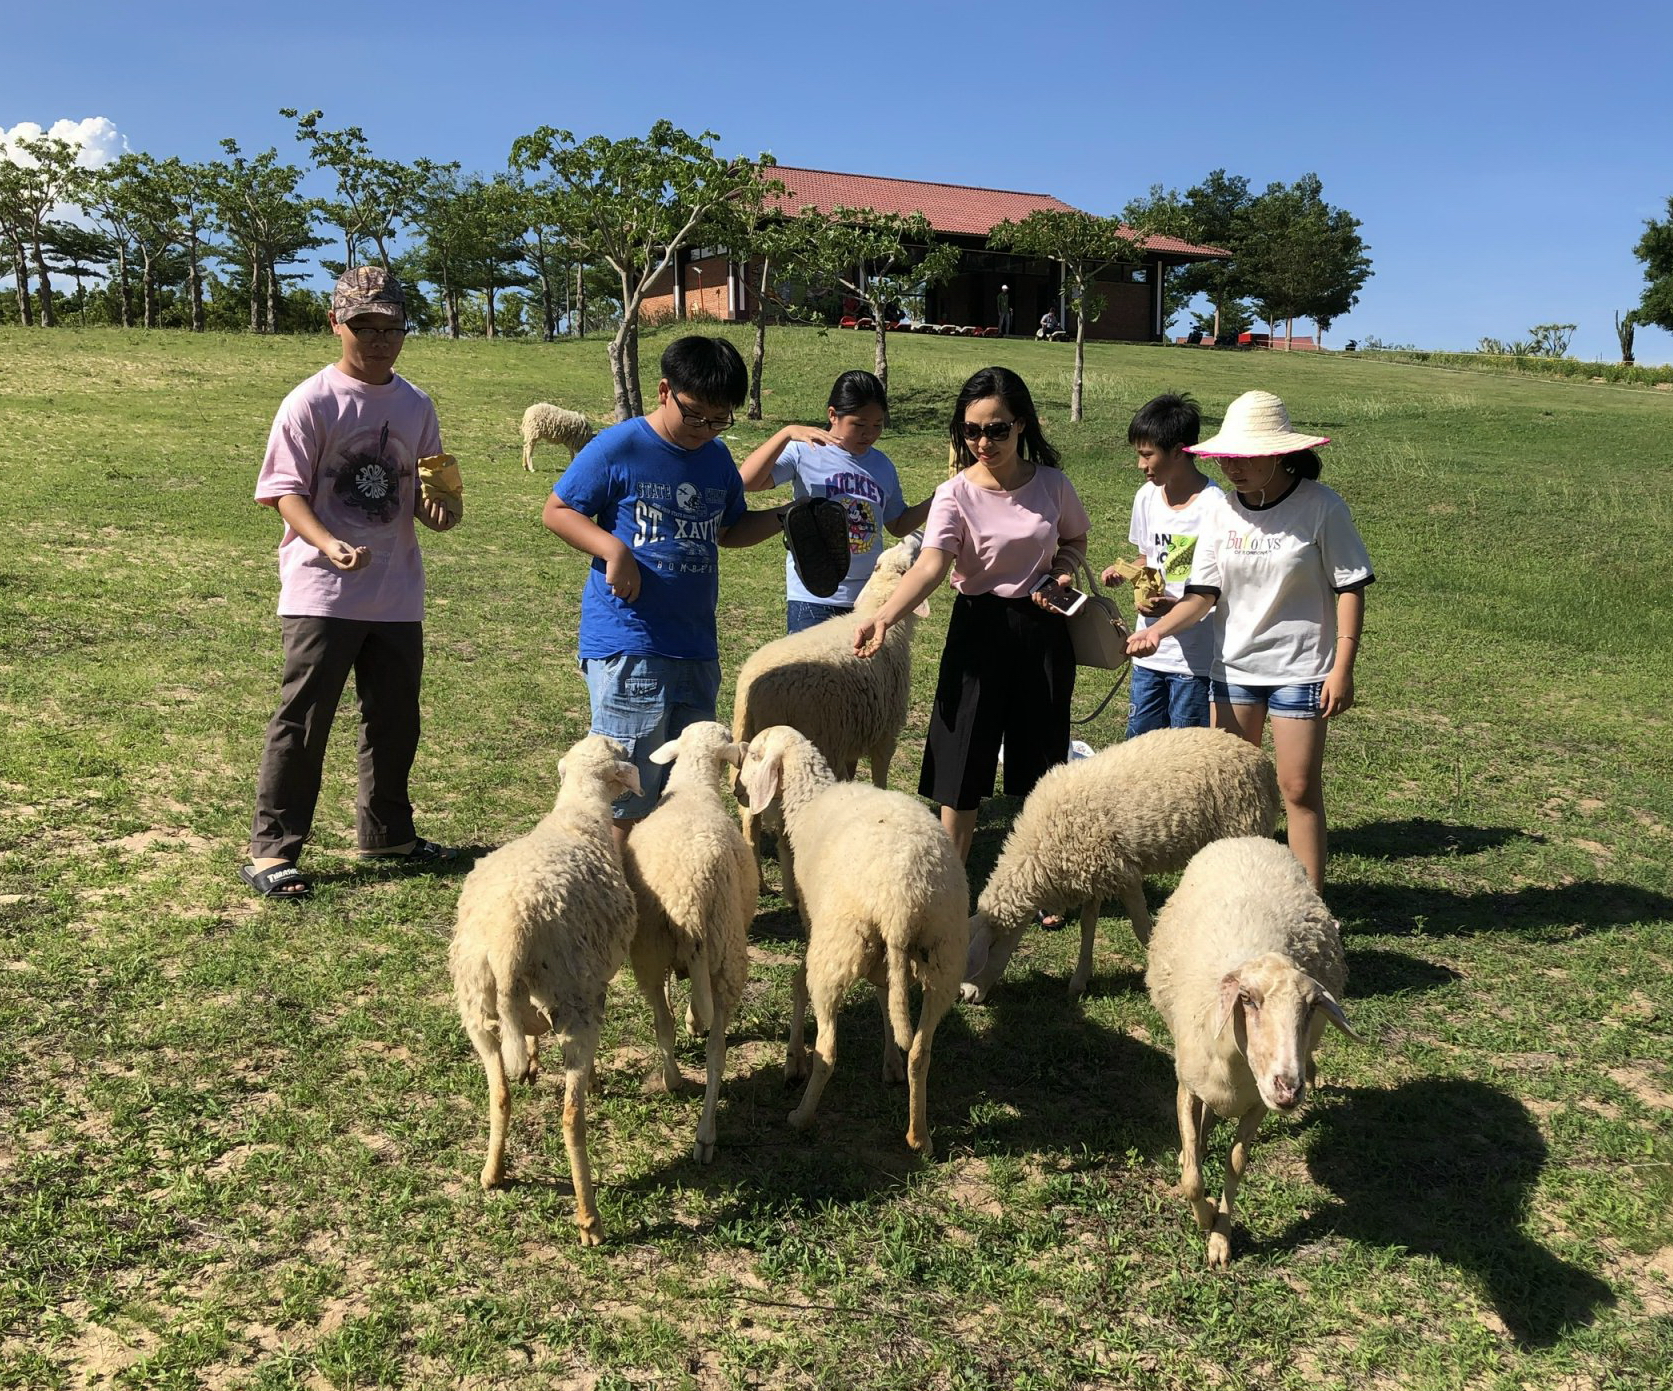 Du khách đến Ninh Thuận thích chăn cừu trên thảo nguyên xanh, tối ngủ lều Mông Cổ, sáng lặn biển ngắm san hô  - Ảnh 2.